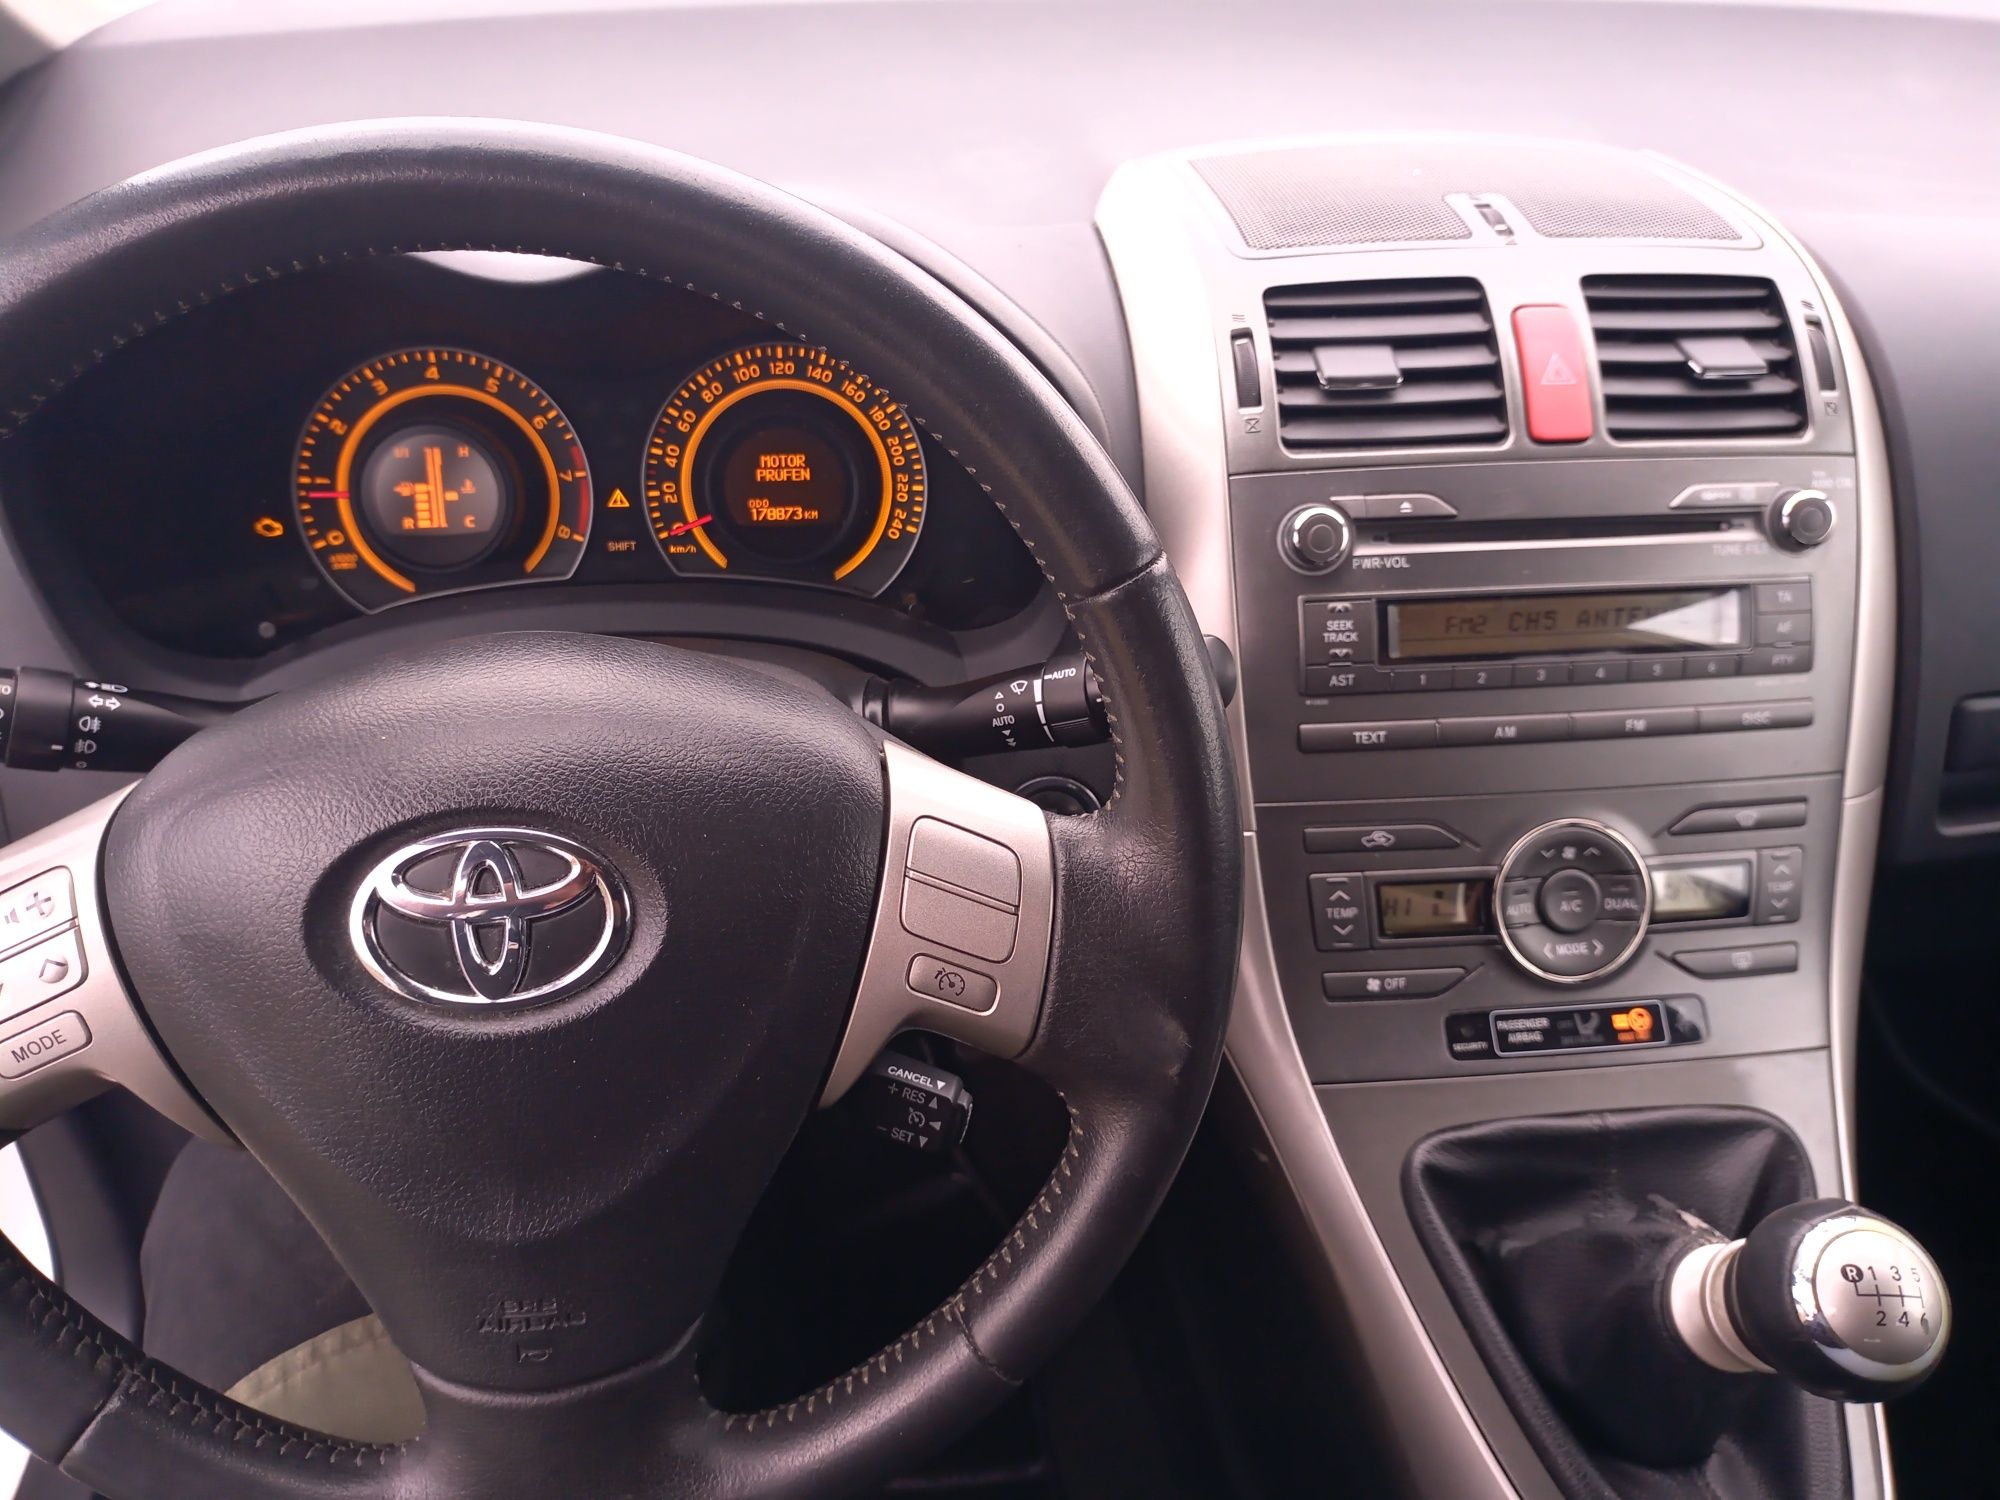 Toyota Auris 1.6 benzyna Xenon,temp,klima itp.z Niemiec 2009r.